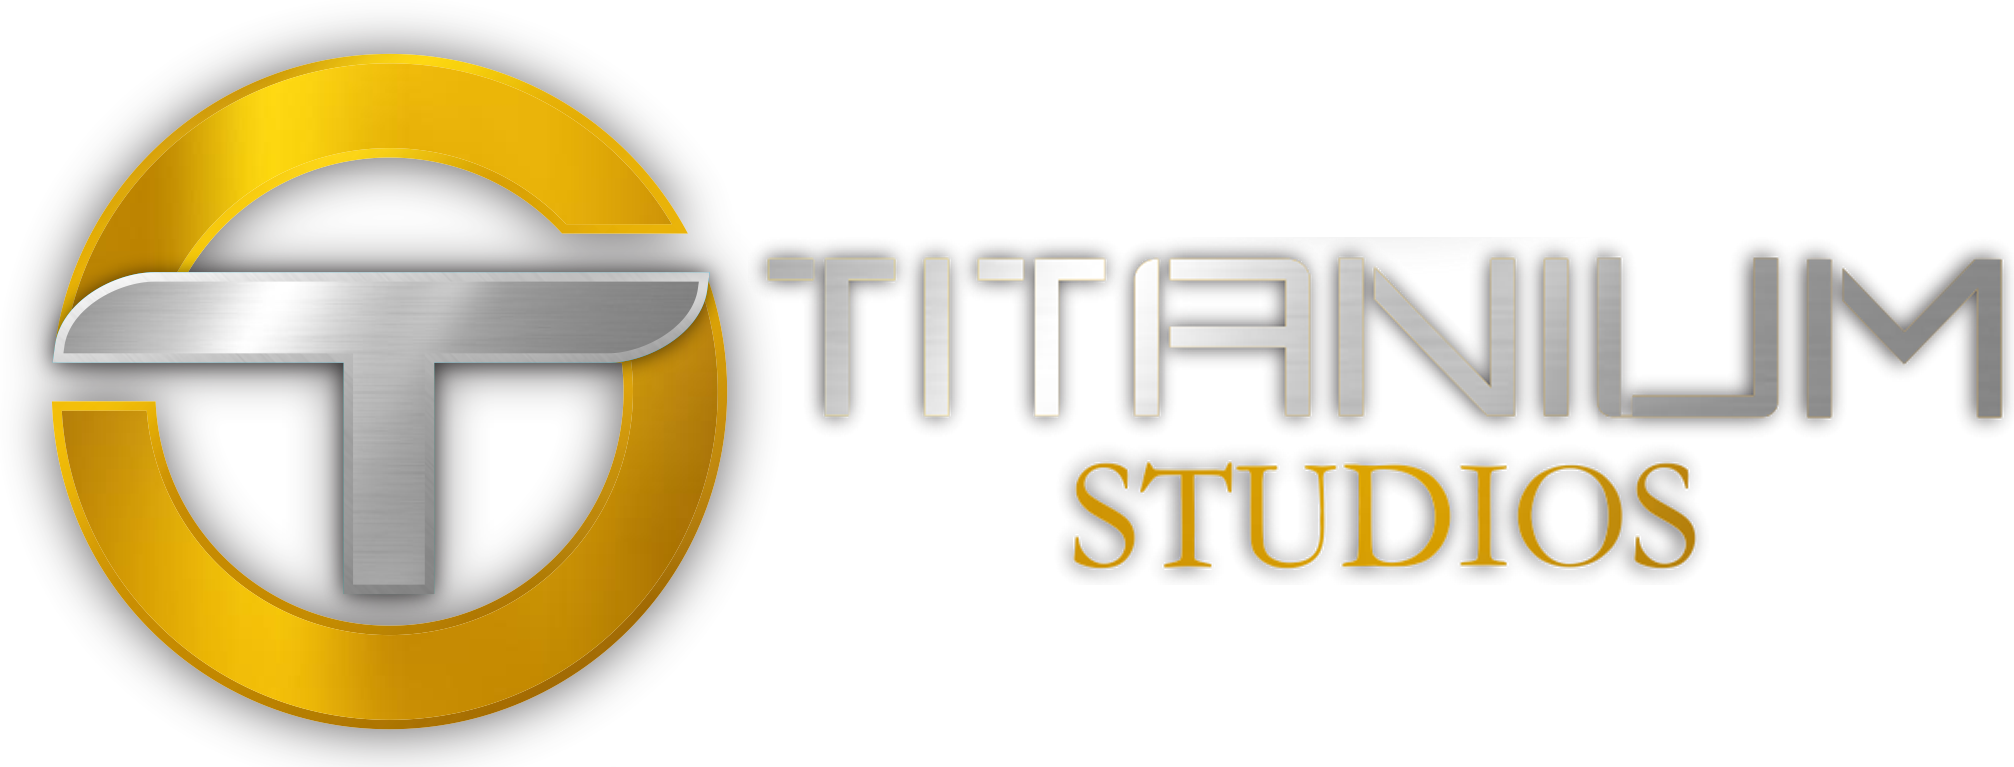 Titanium Studios Logo